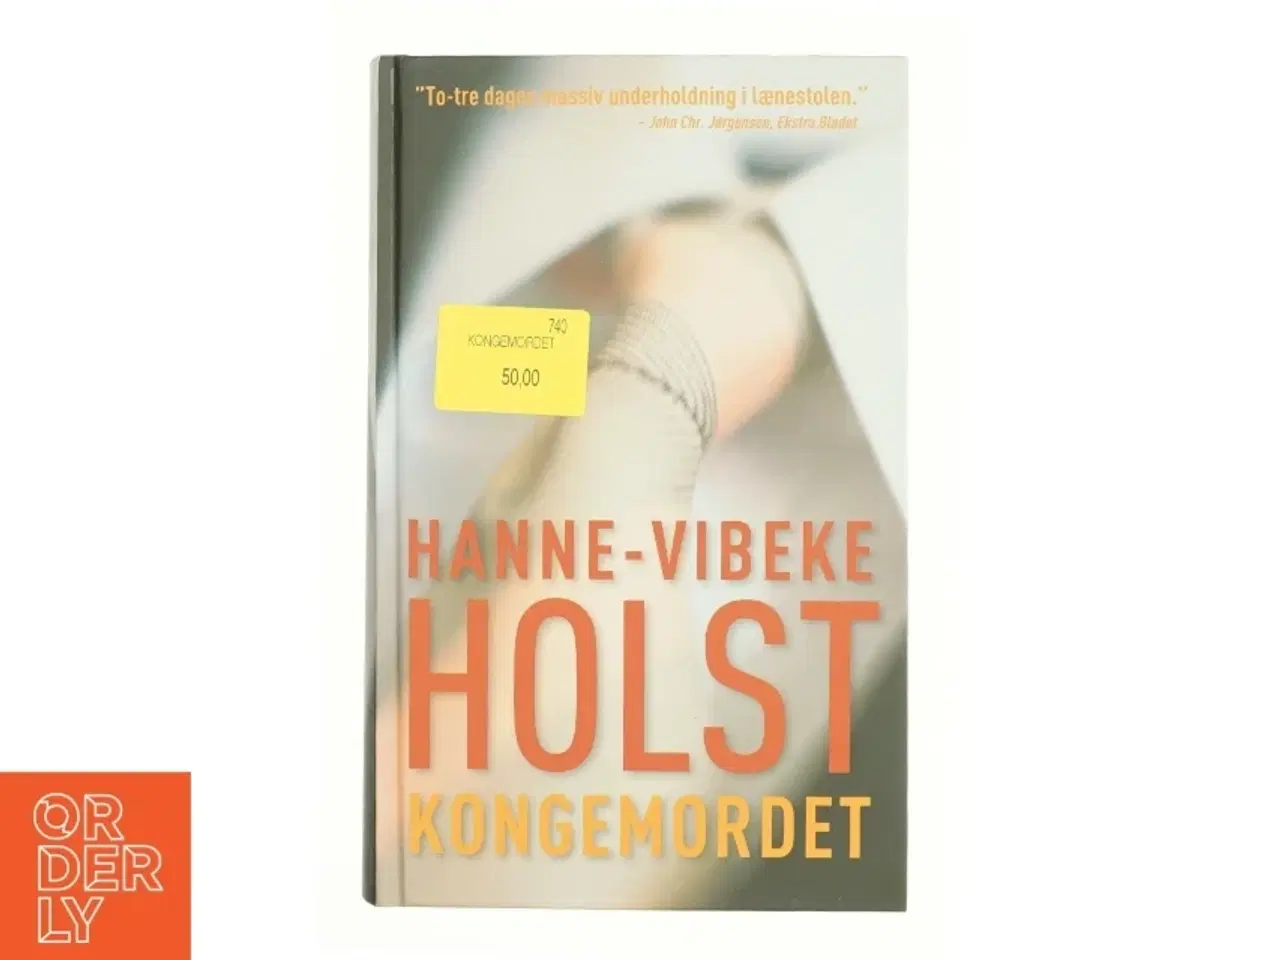 Billede 1 - Kongemordet : roman af Hanne-Vibeke Holst (Bog)